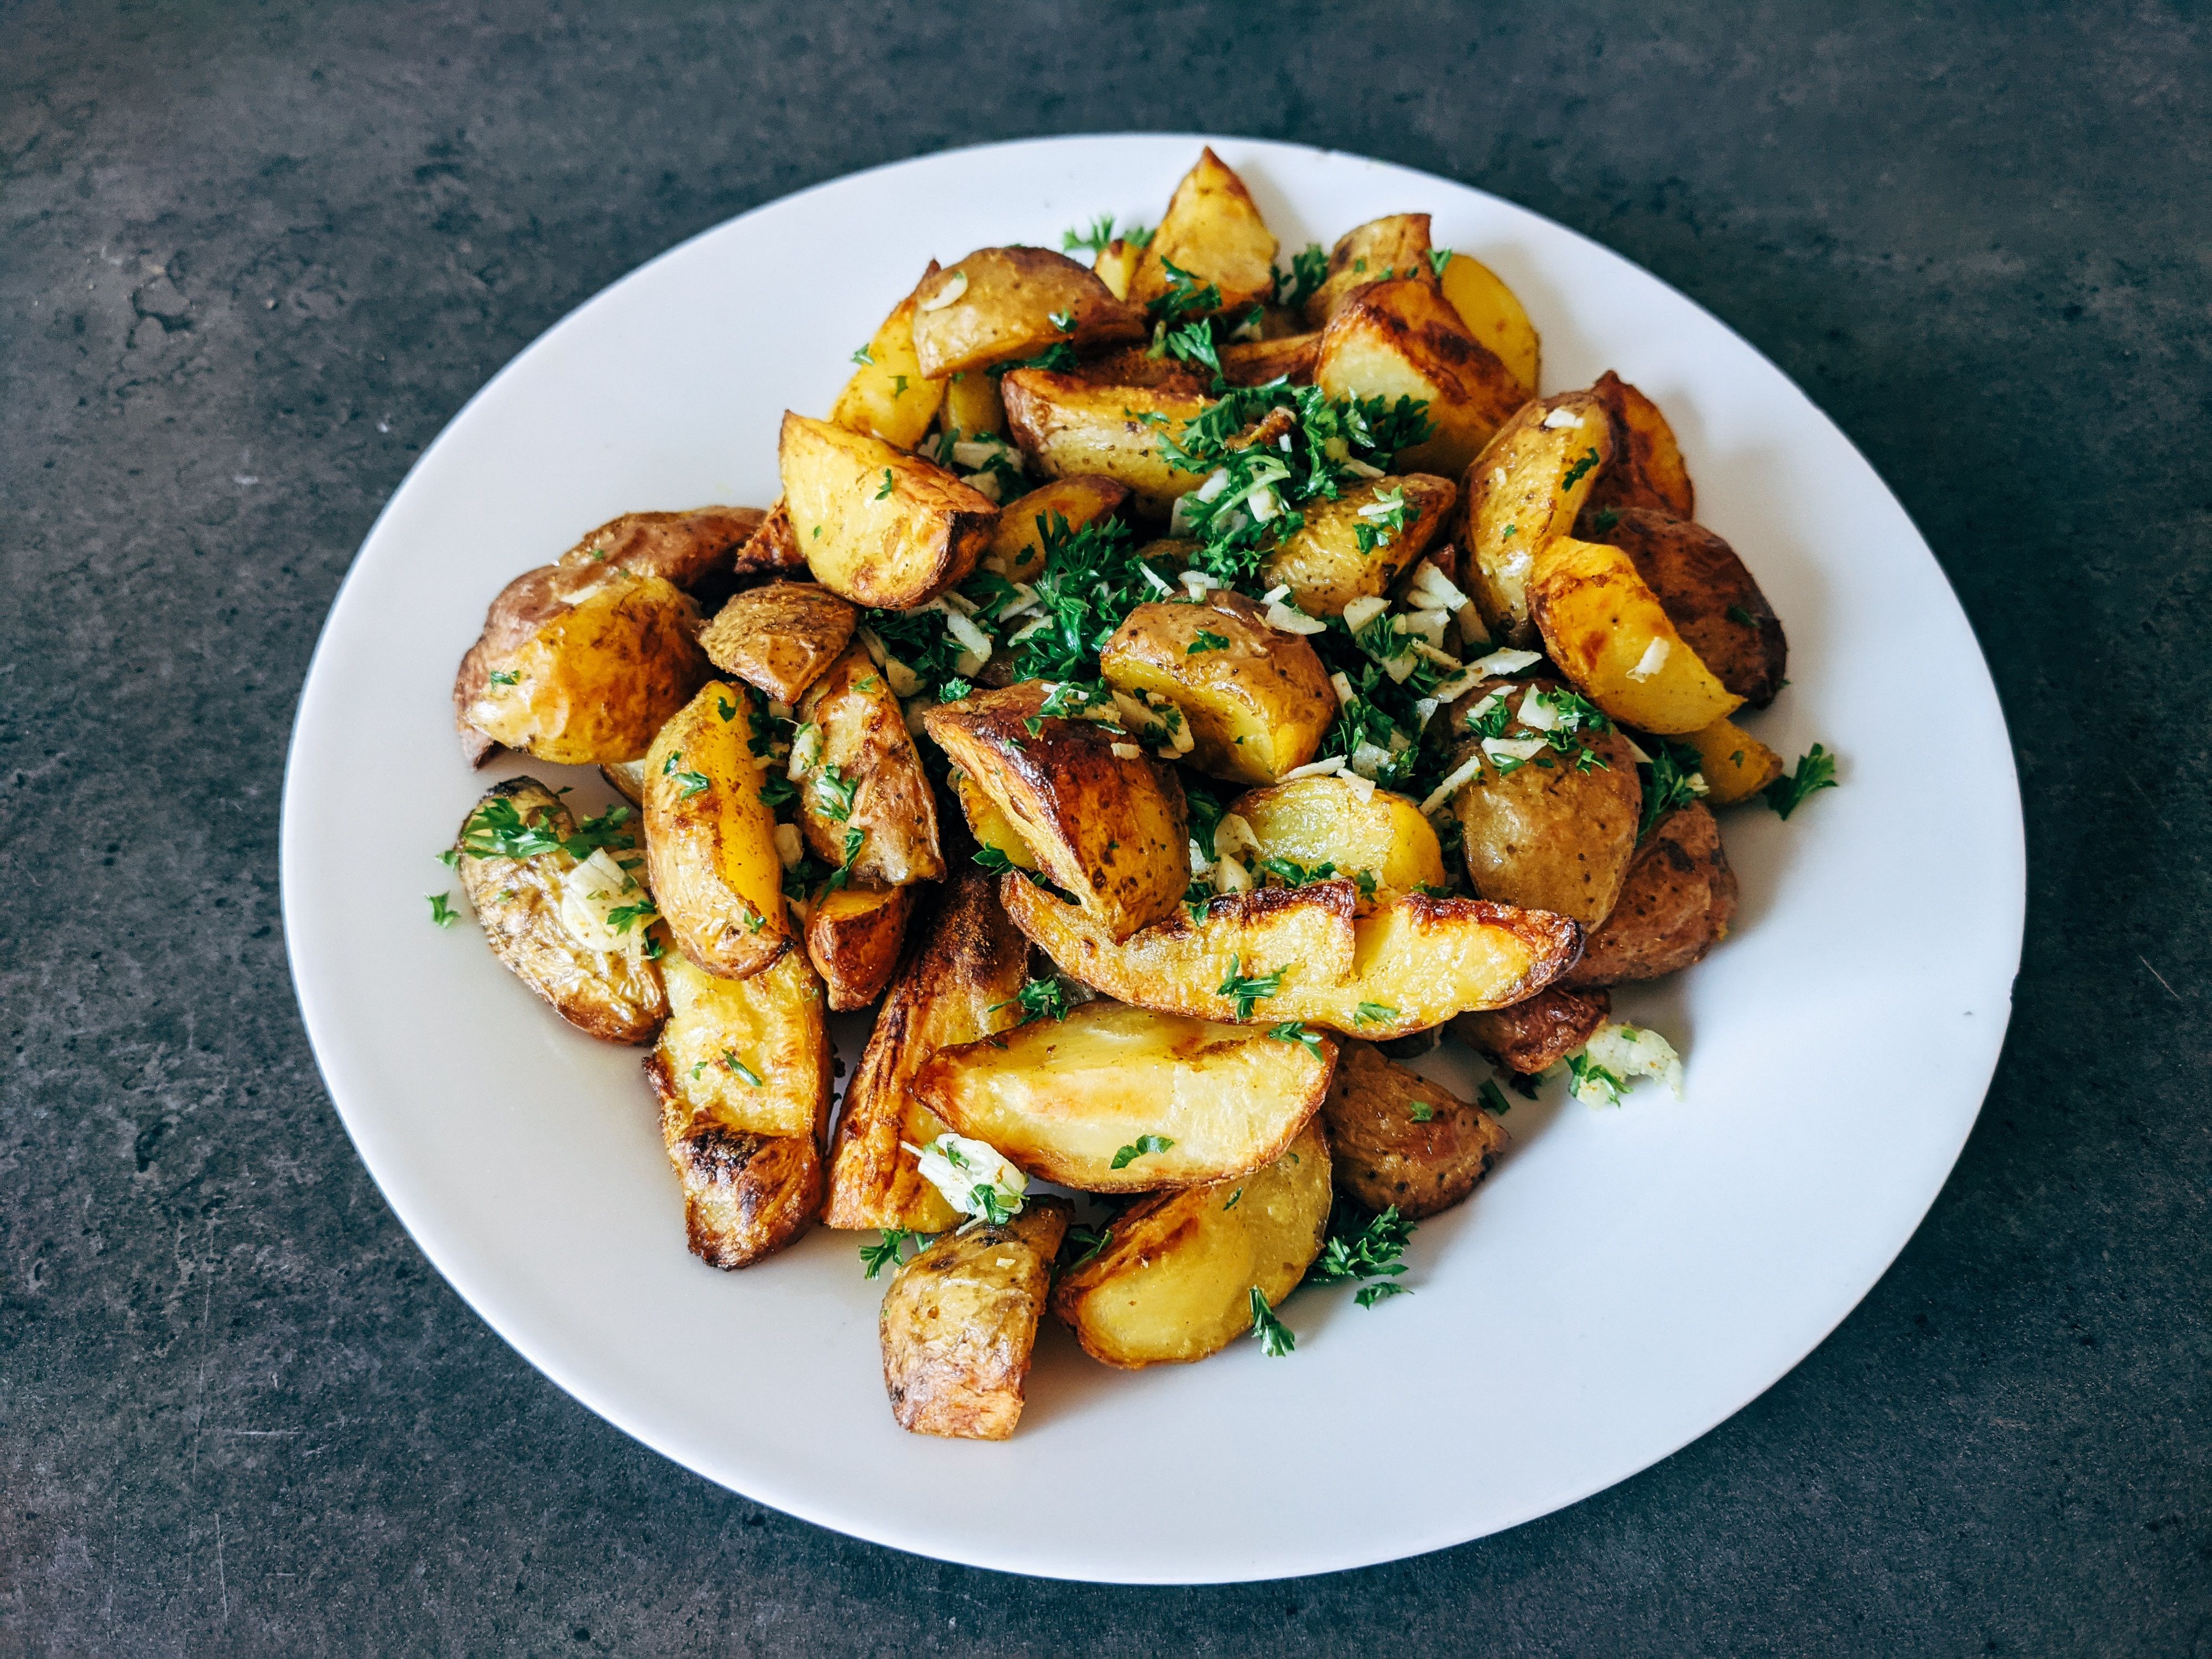 Як правильно запекти картоплю - приготуйте просто - рецепт Джеймі Олівера - Новини Смачно